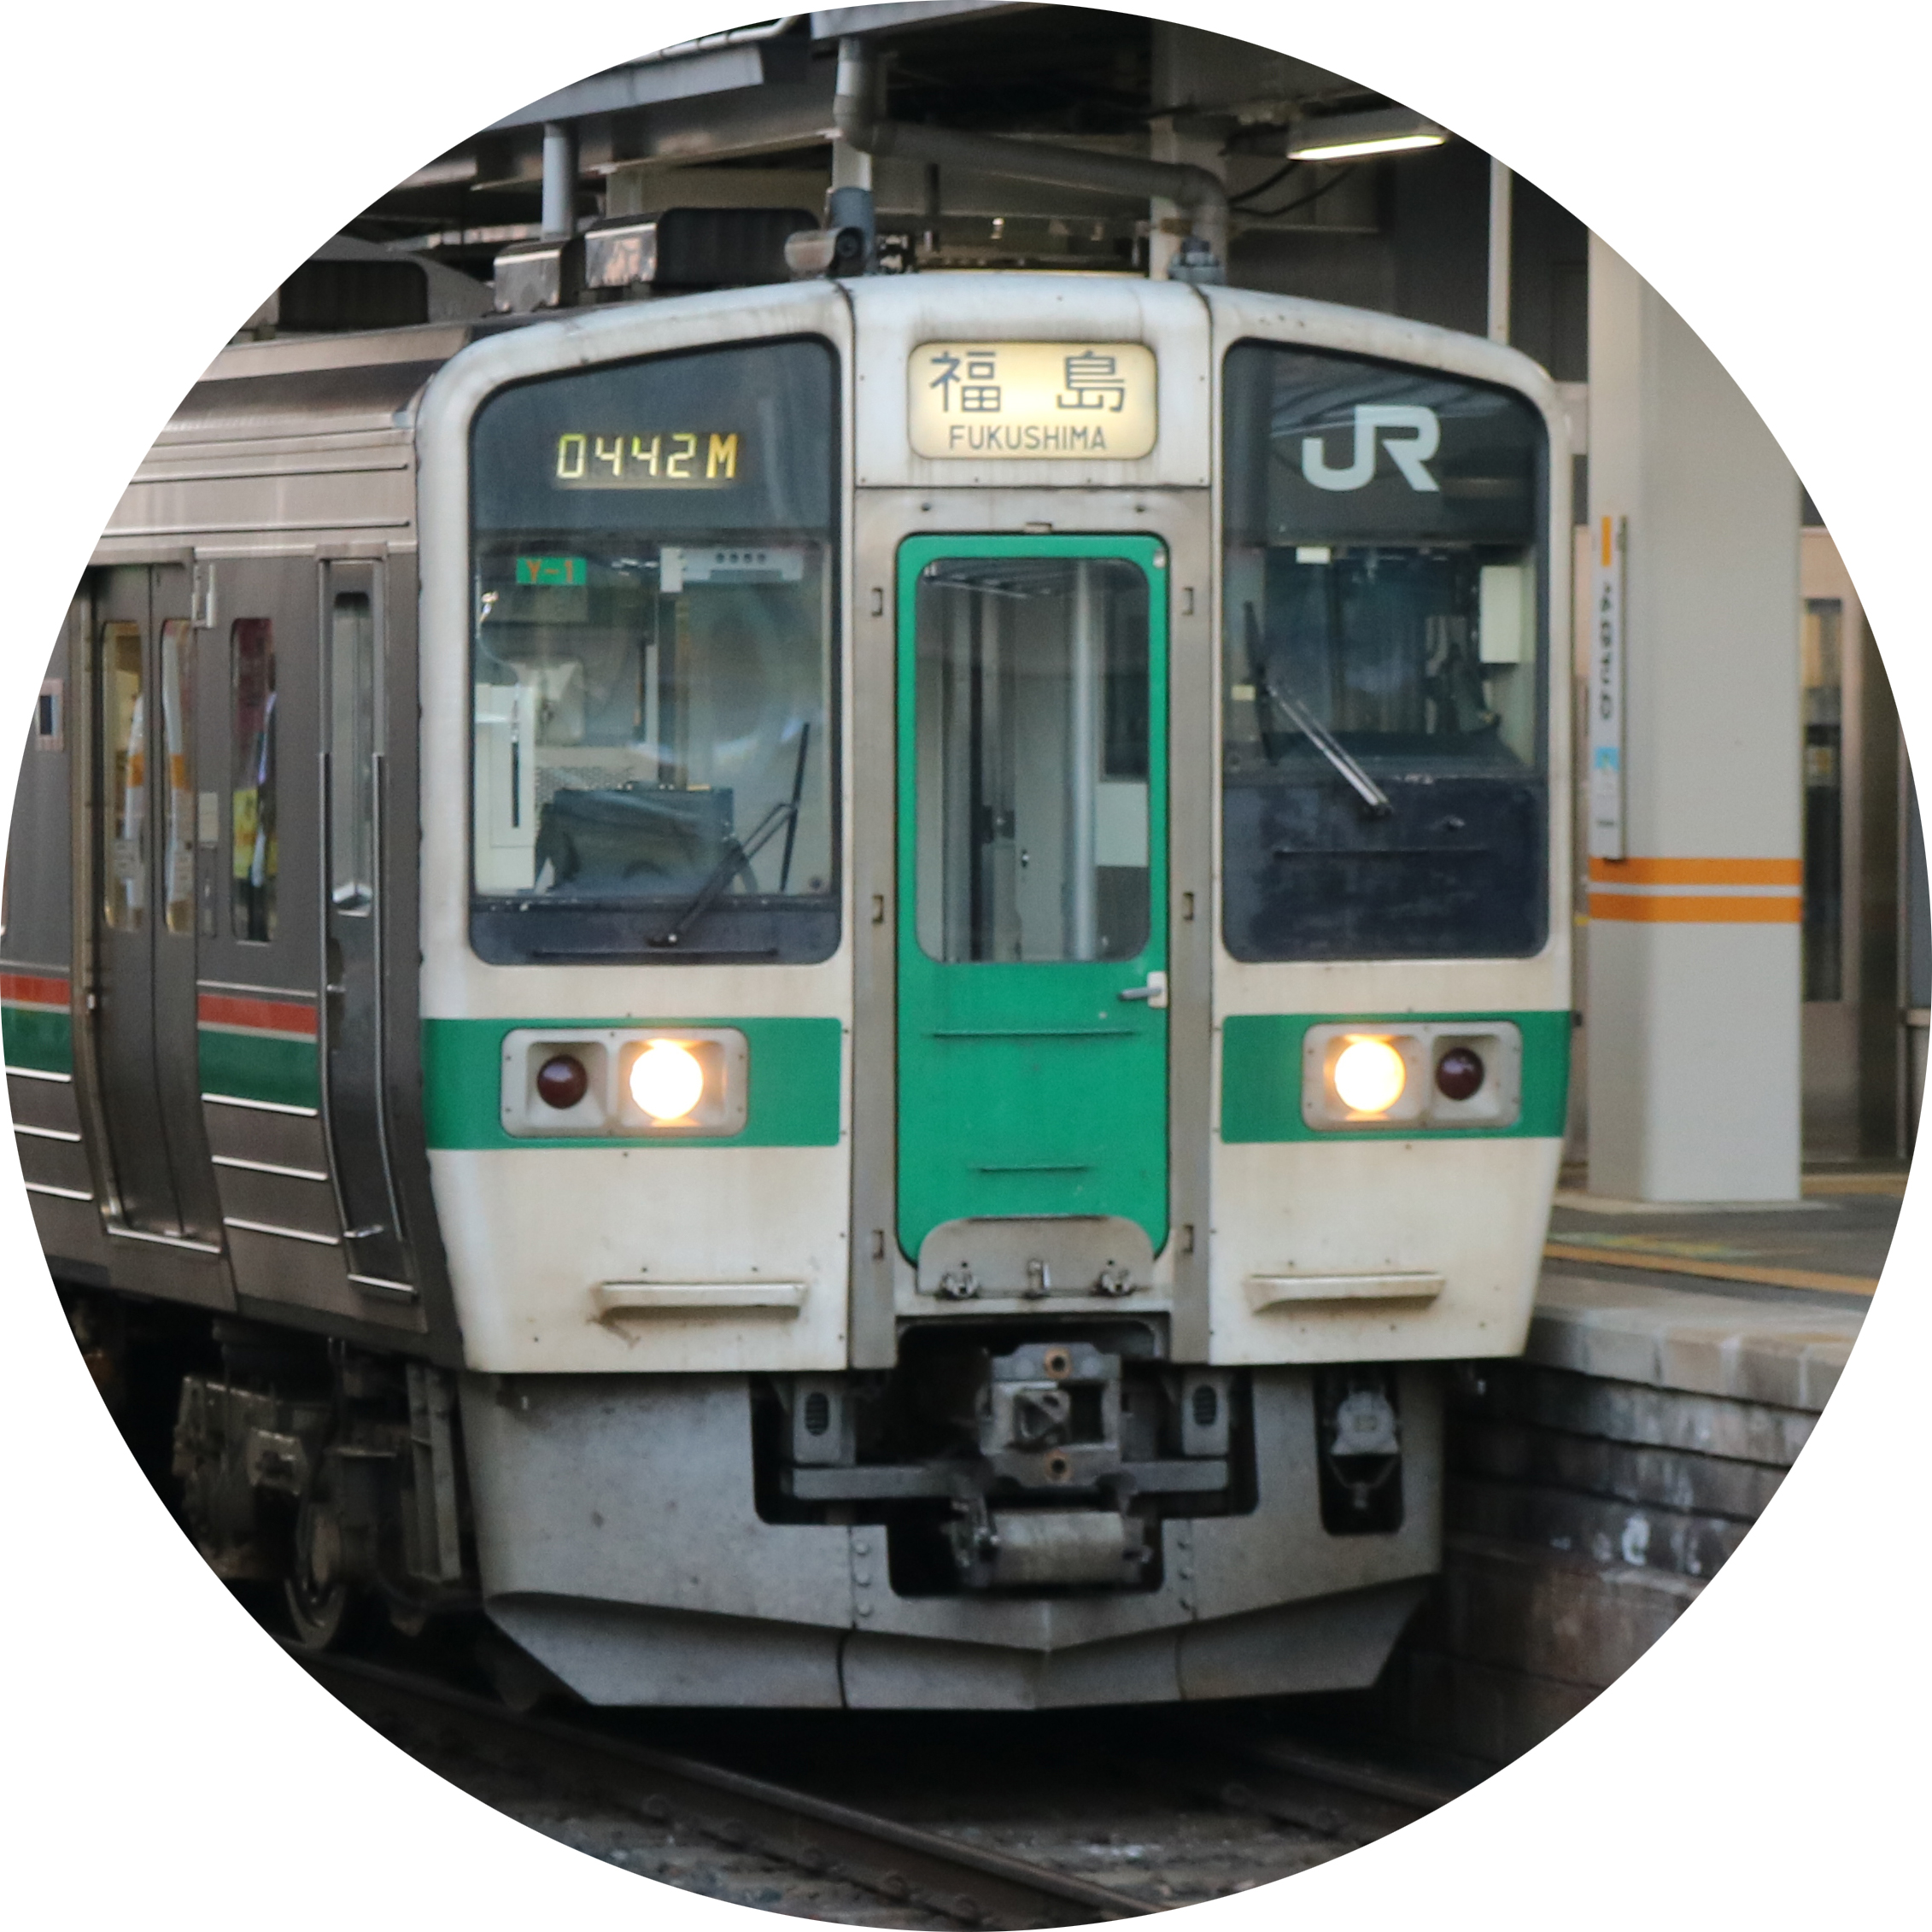 奥羽本線